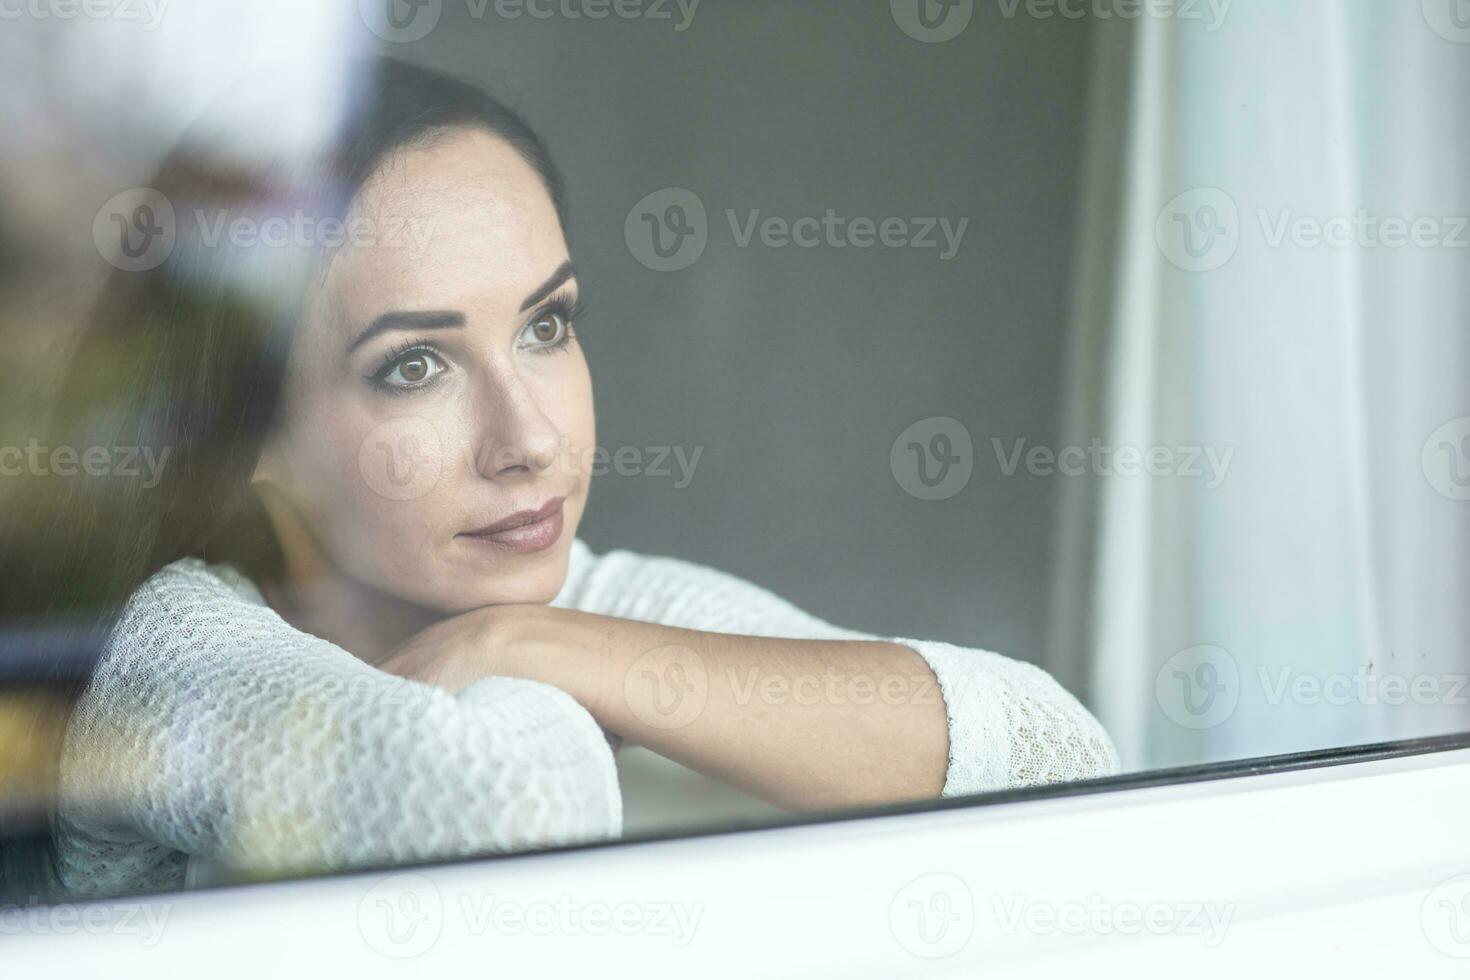 solitude impact de une quarantaine pendant pandémie fait du triste femme Regardez en dehors de le fenêtre photo